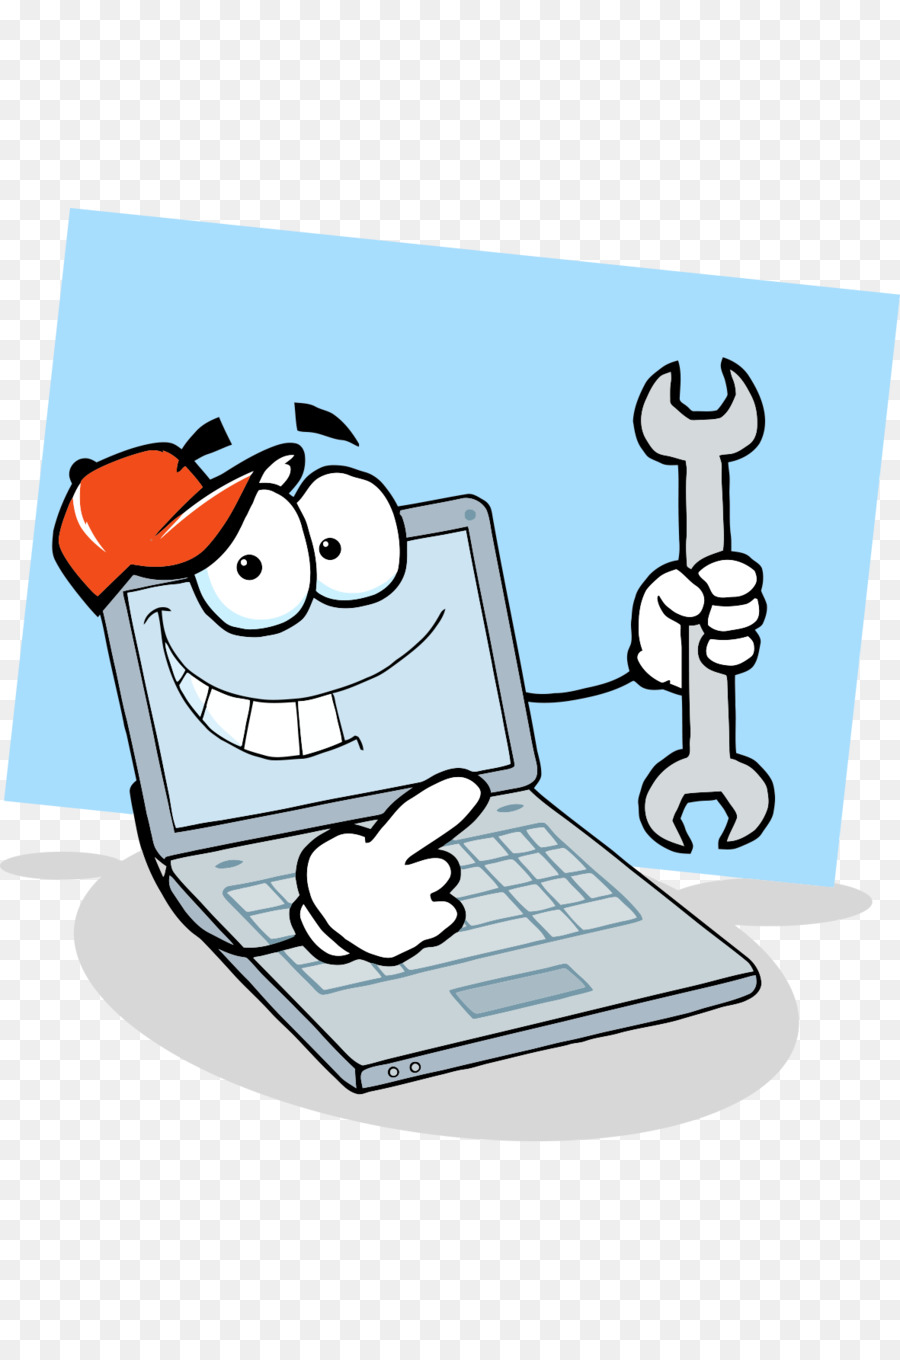 Computer portatile tecnico di riparazione di Personal computer Clip art - Divertente computer cartoon illustrazioni